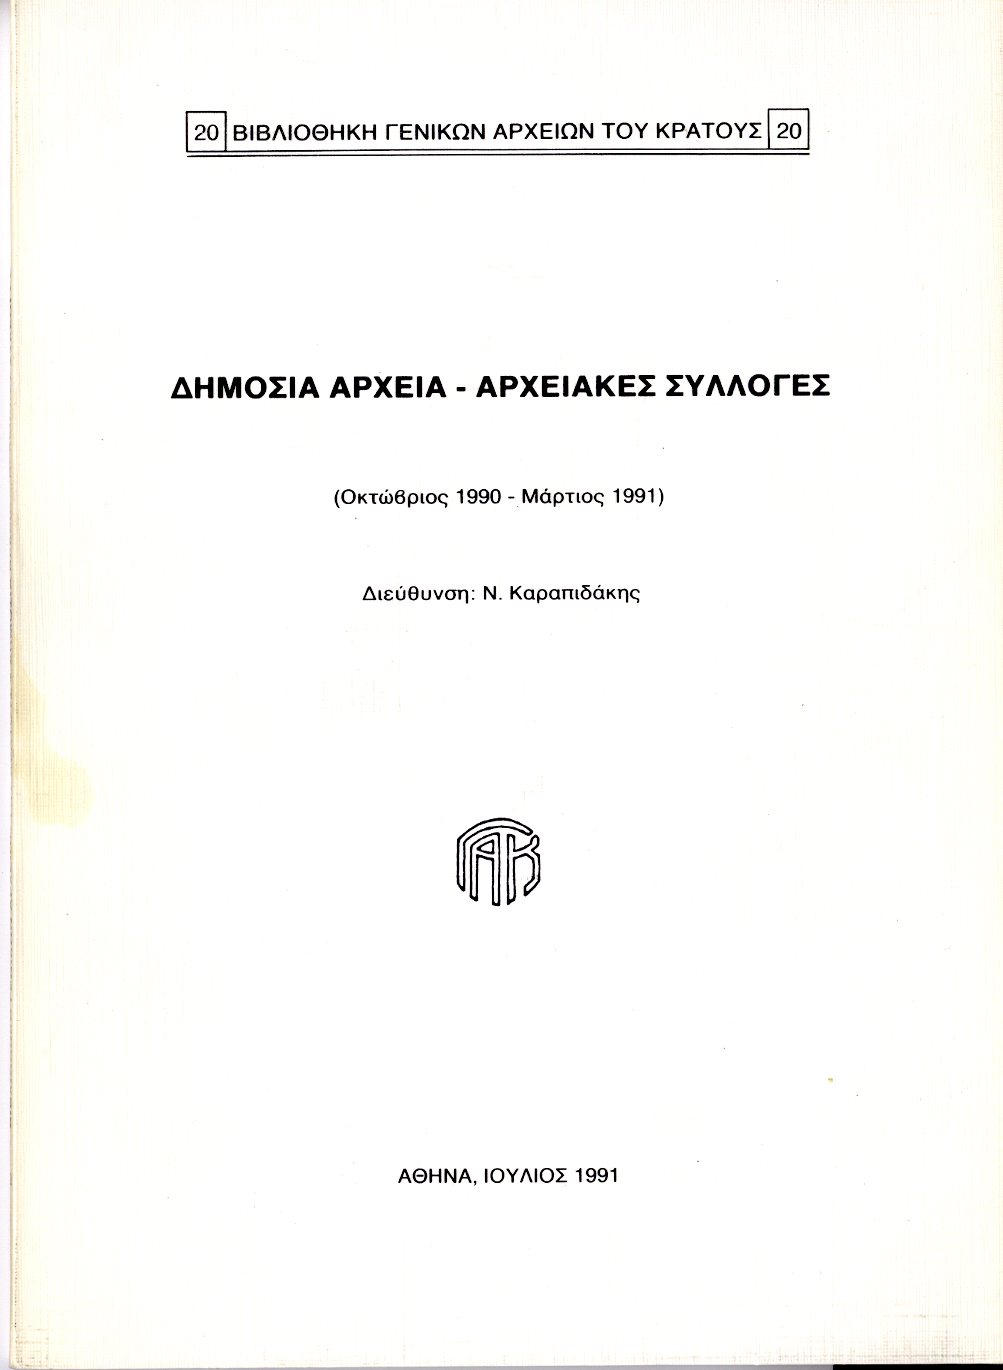 Εξώφυλλο από ΔΗΜΟΣΙΑ ΑΡΧΕΙΑ - ΑΡΧΕΙΑΚΕΣ ΣΥΛΛΟΓΕΣ (Οκτώβριος 1990 - Μάρτιος 1991)